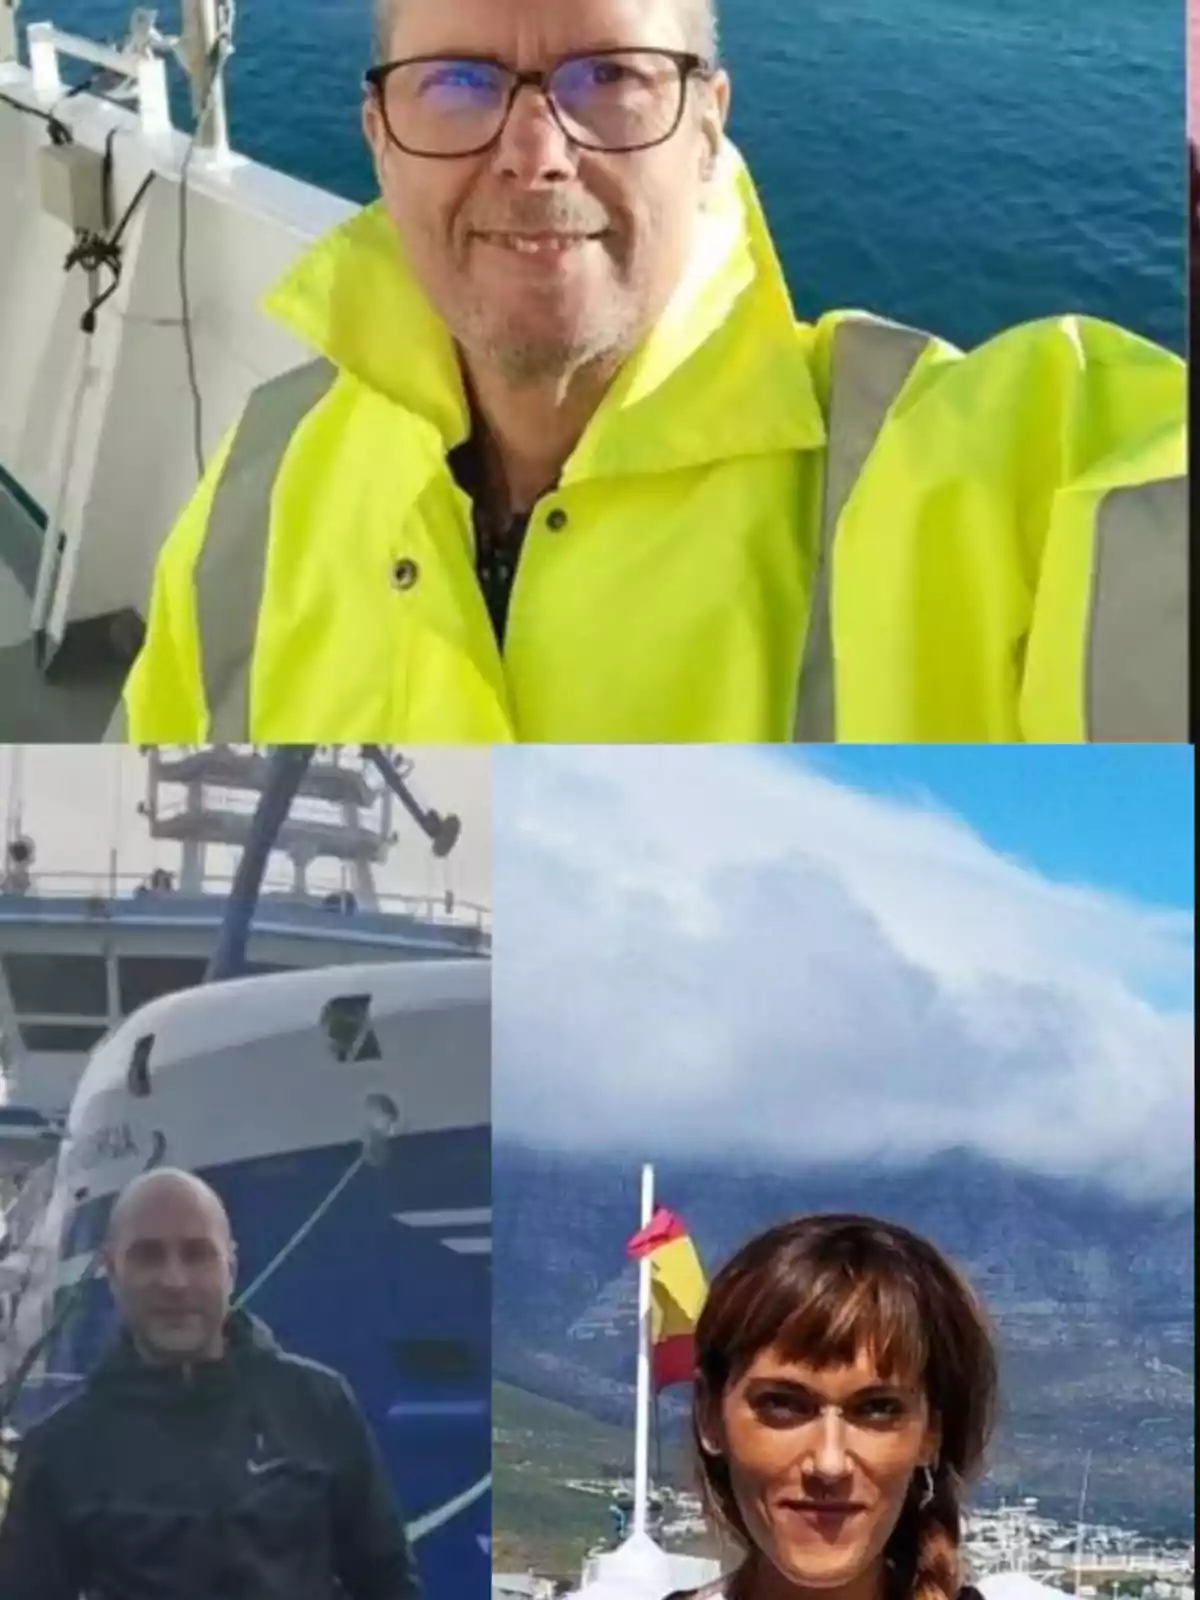 Tres personas posando en diferentes ubicaciones cerca de barcos y el mar.